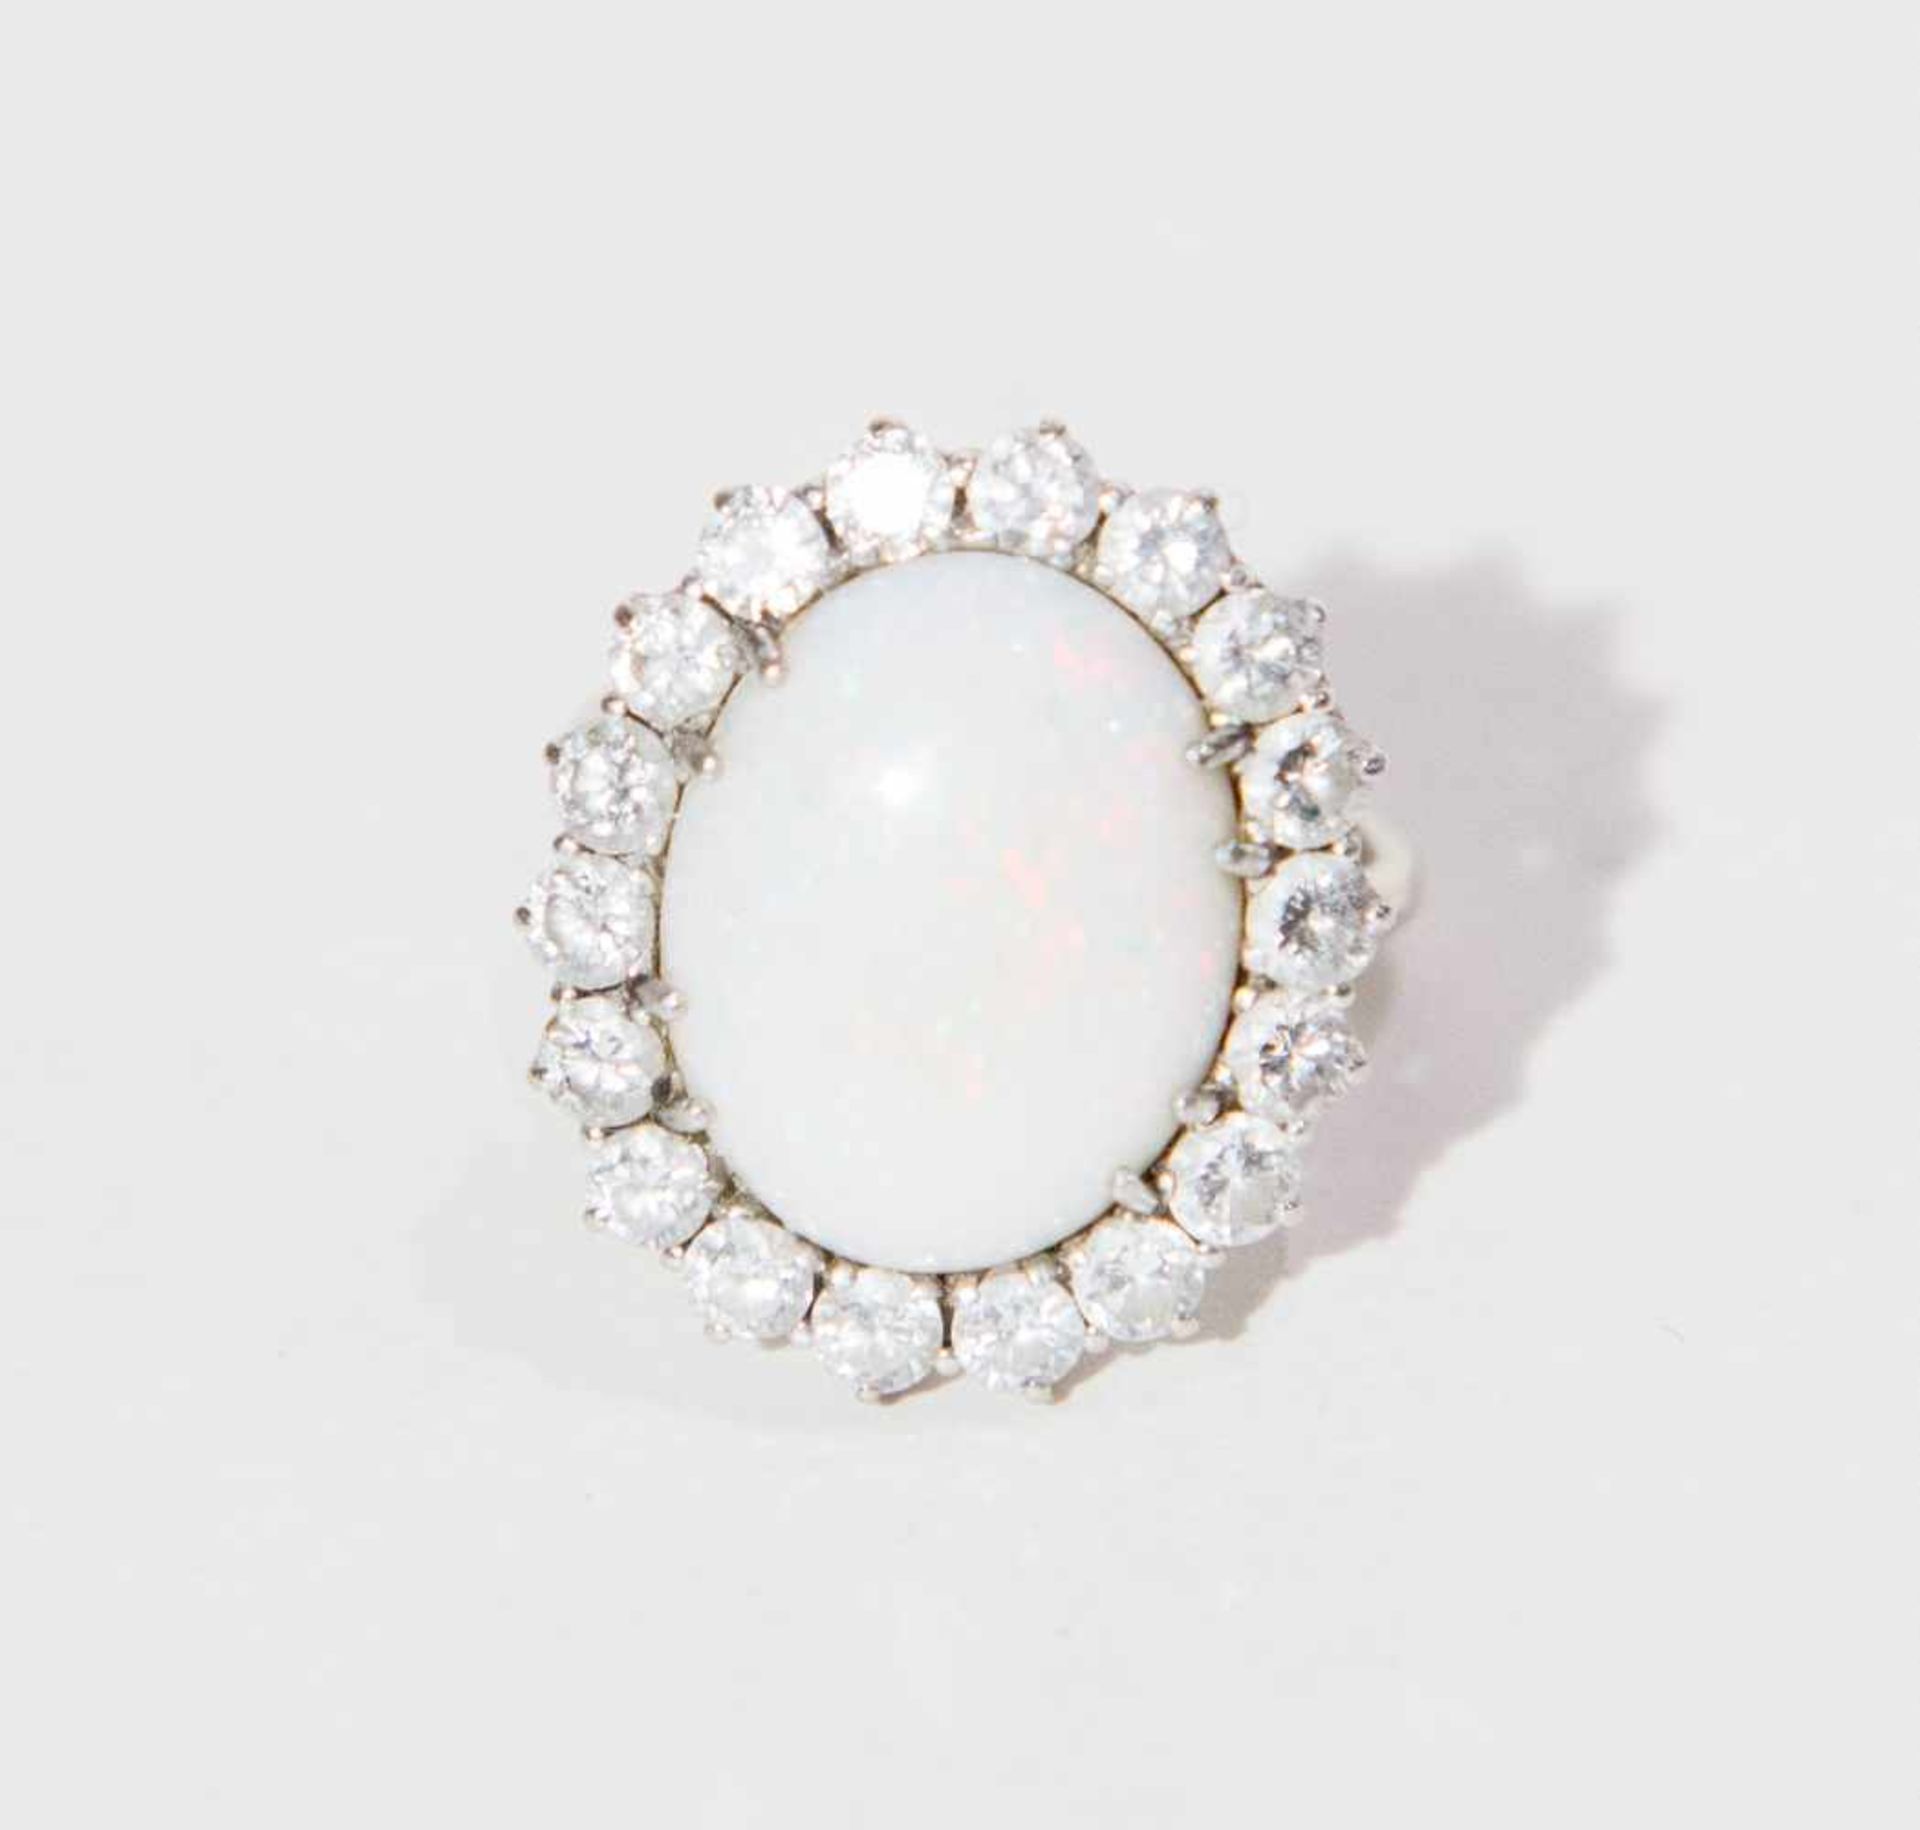 ANELLO IN ORO BIANCO 18K Decorato con cabochon ovale di opale nobile bianca posto entro cornice di